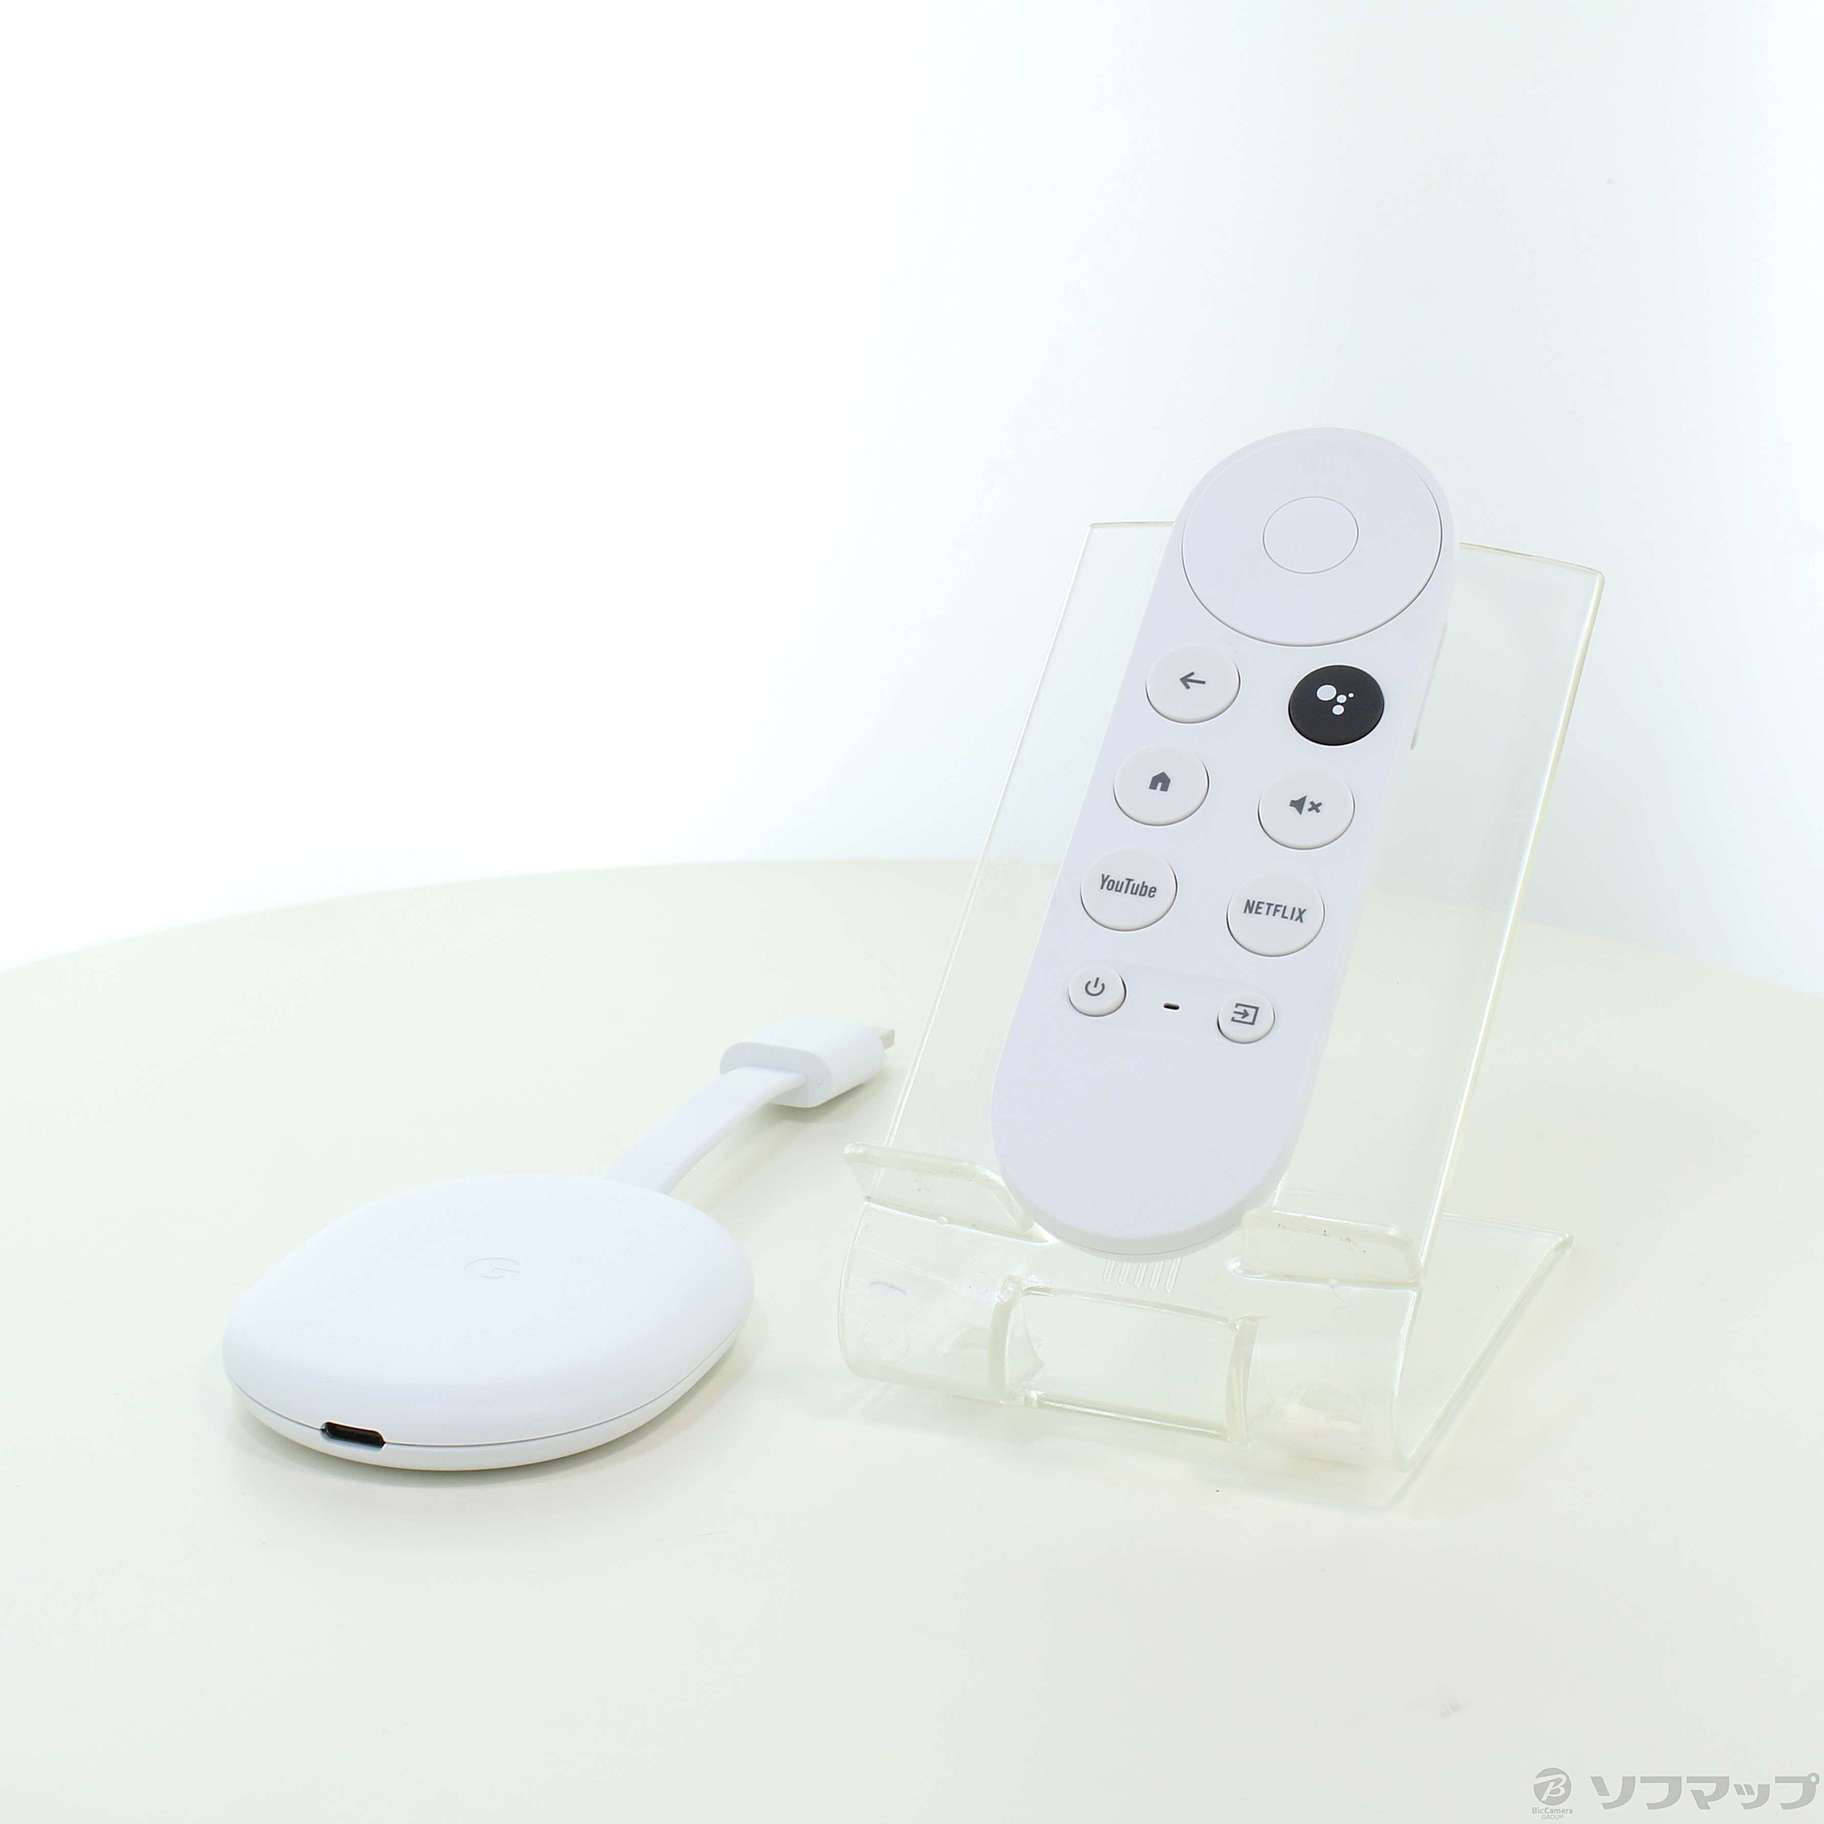 【新品未開封】Chromecast with Google TV【4K対応】